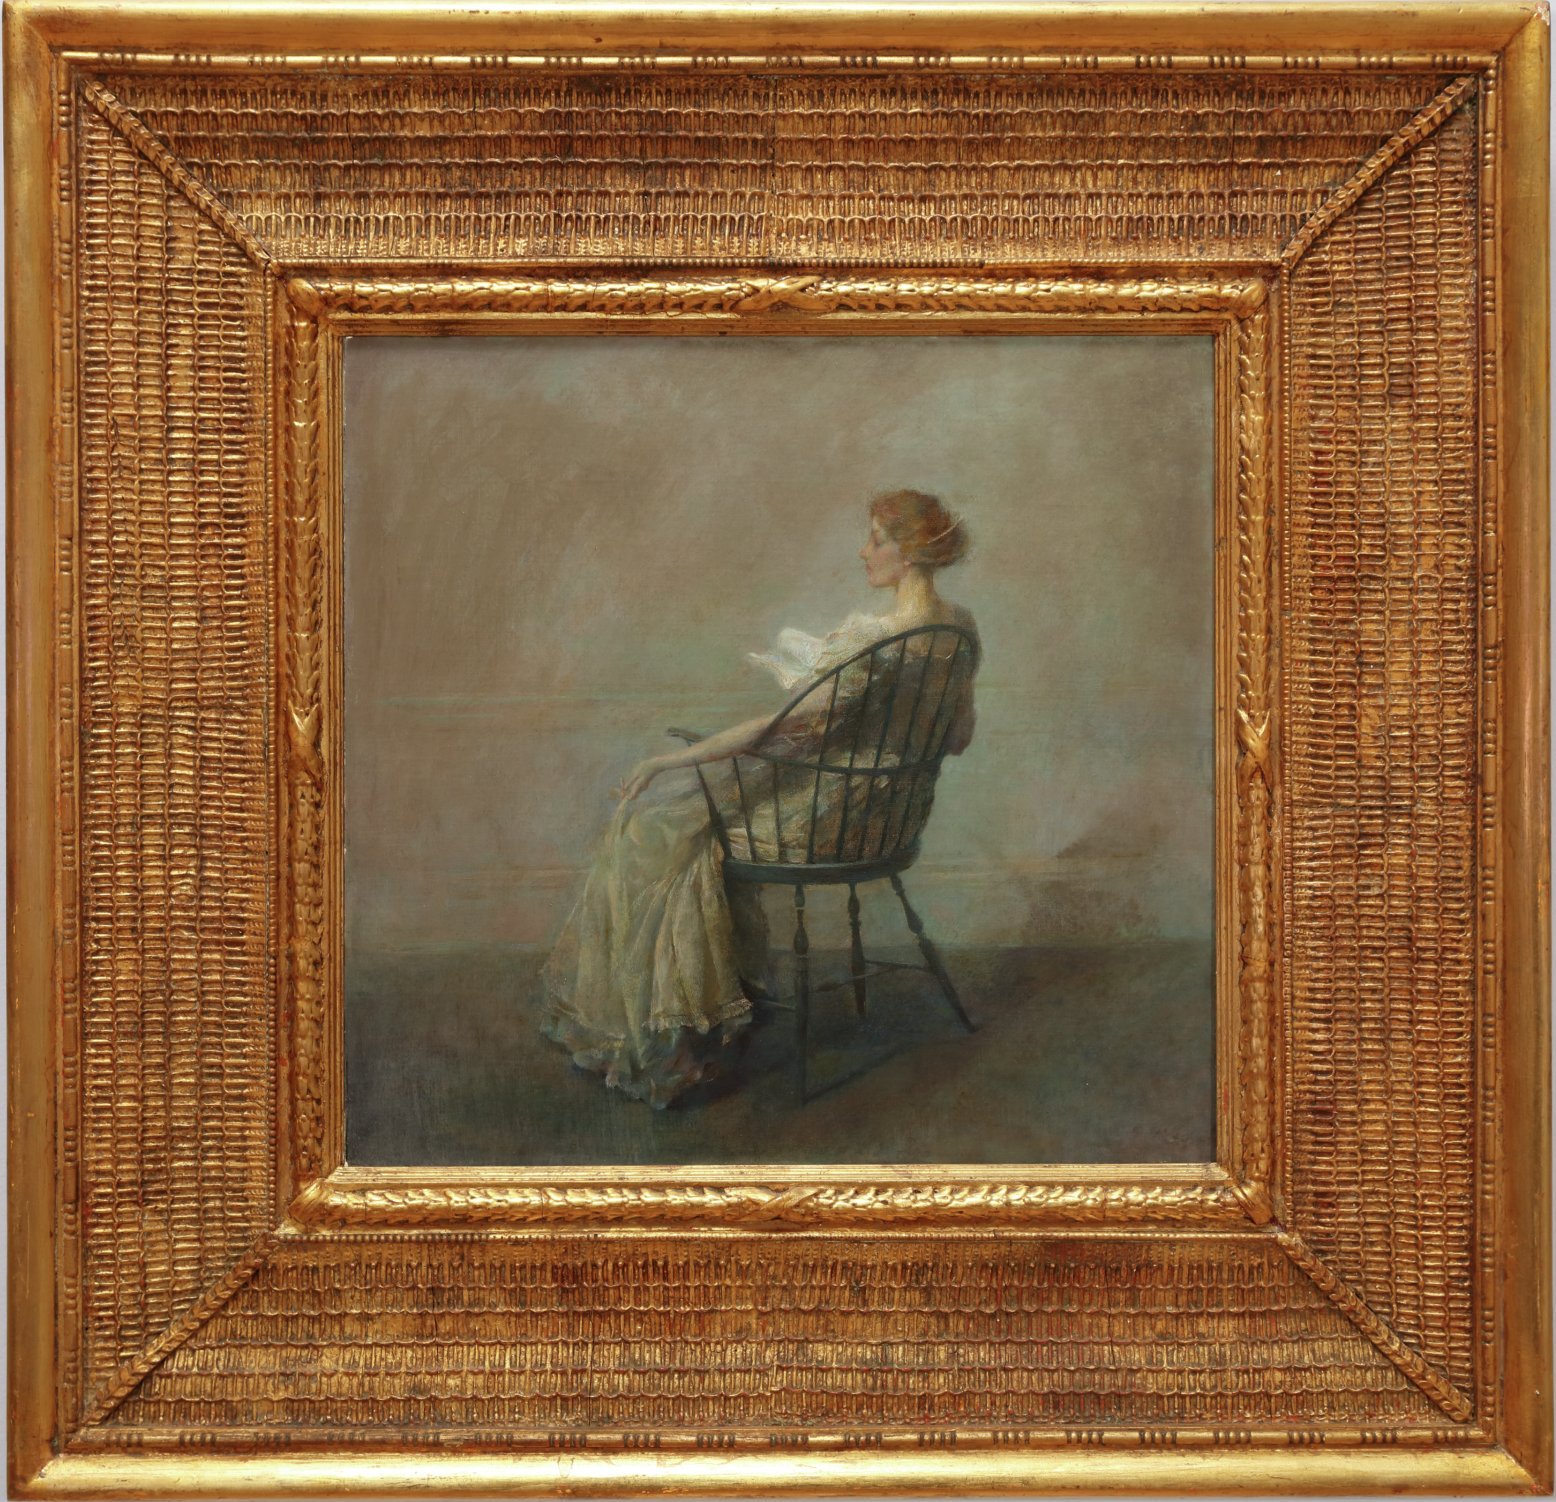 مطالعه (یا بانو روی صندلی چوبی) by Thomas Wilmer Dewing - ca. 1909 - 20 1/4 x 21 1/2 inches 